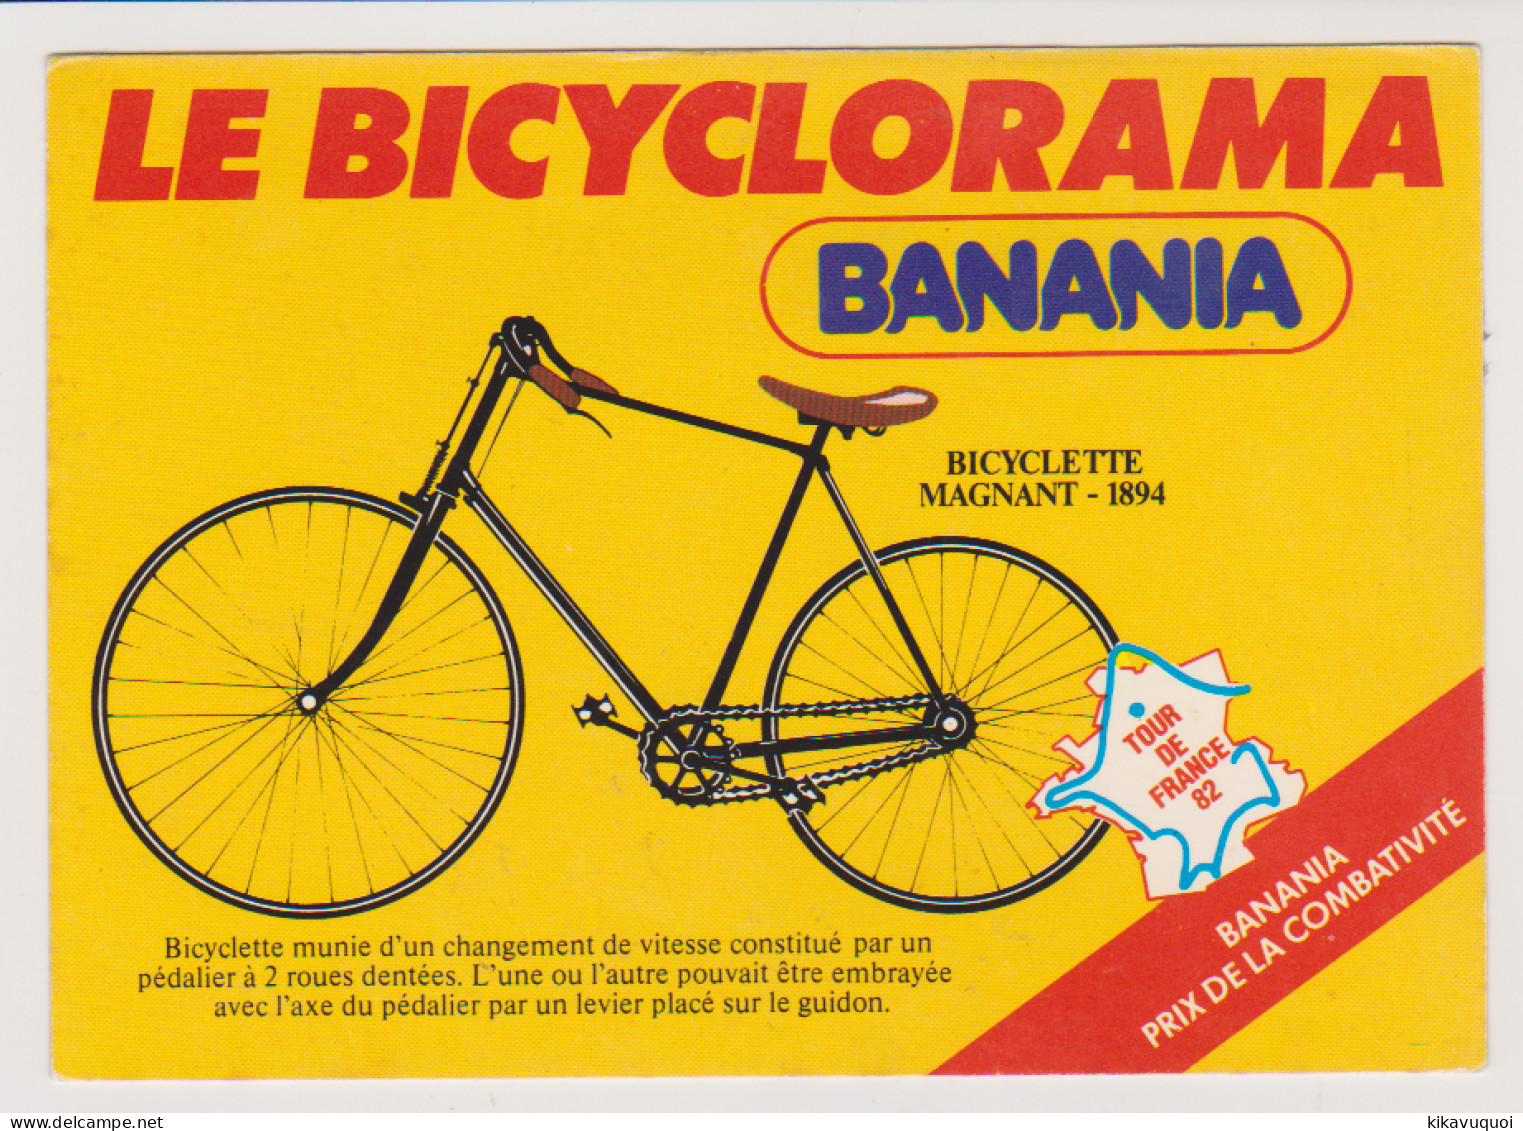 BANANIA - TOUR DE FRANCE 1982 - LE BICYCLORAMA - VELO - CYCLE - CARTE POSTALE ANCIENNE - Motos